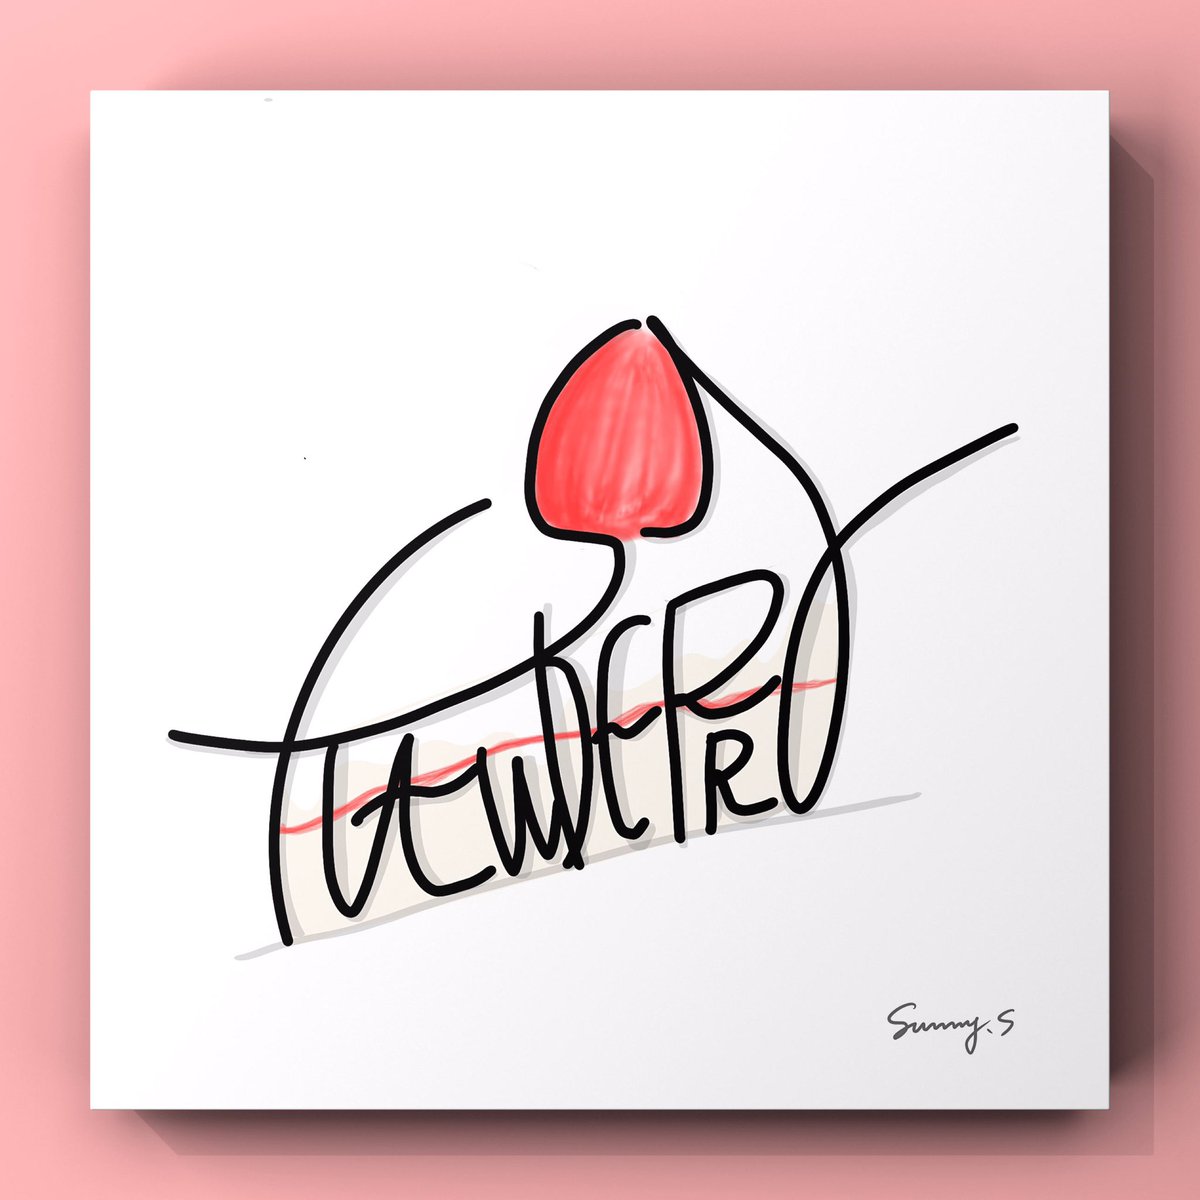 𝙎𝙪𝙣𝙣𝙮 𝙎 Strawberry いちご いちごの美味しい季節になってきましたね デザイン過去作品 Sunnydesignswork Illustrations Handwriting Worddesign 手書き文字 文字デザイン いちご の イラスト T Co V50cnhrzh1